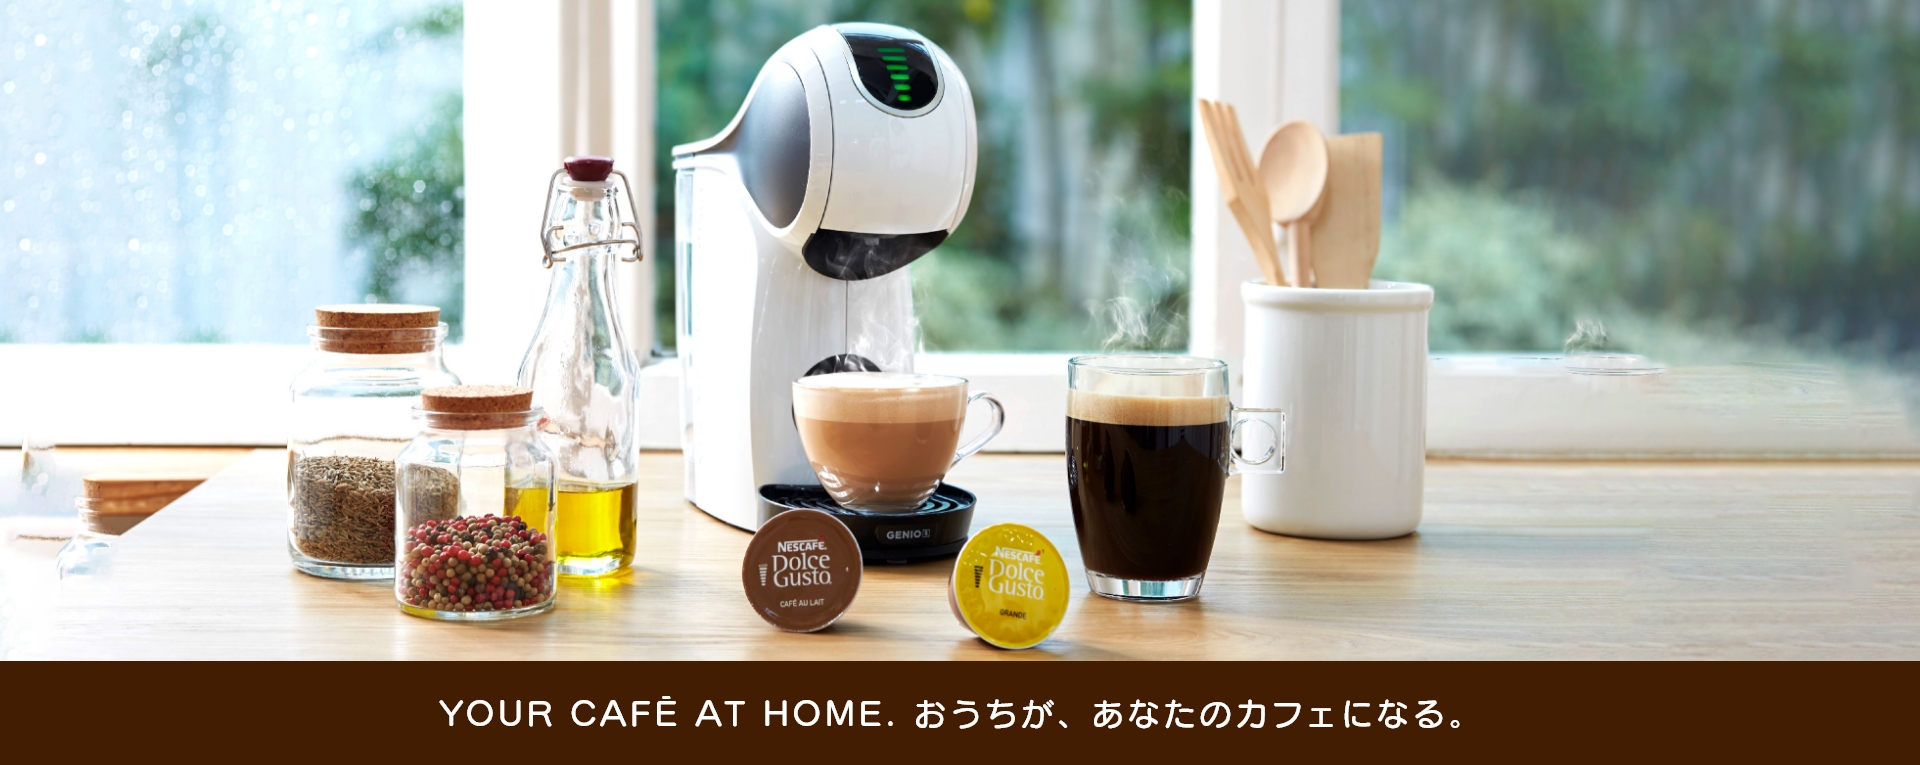 YOUR CAFE AT HOME. おうちが、あなたのカフェになる。